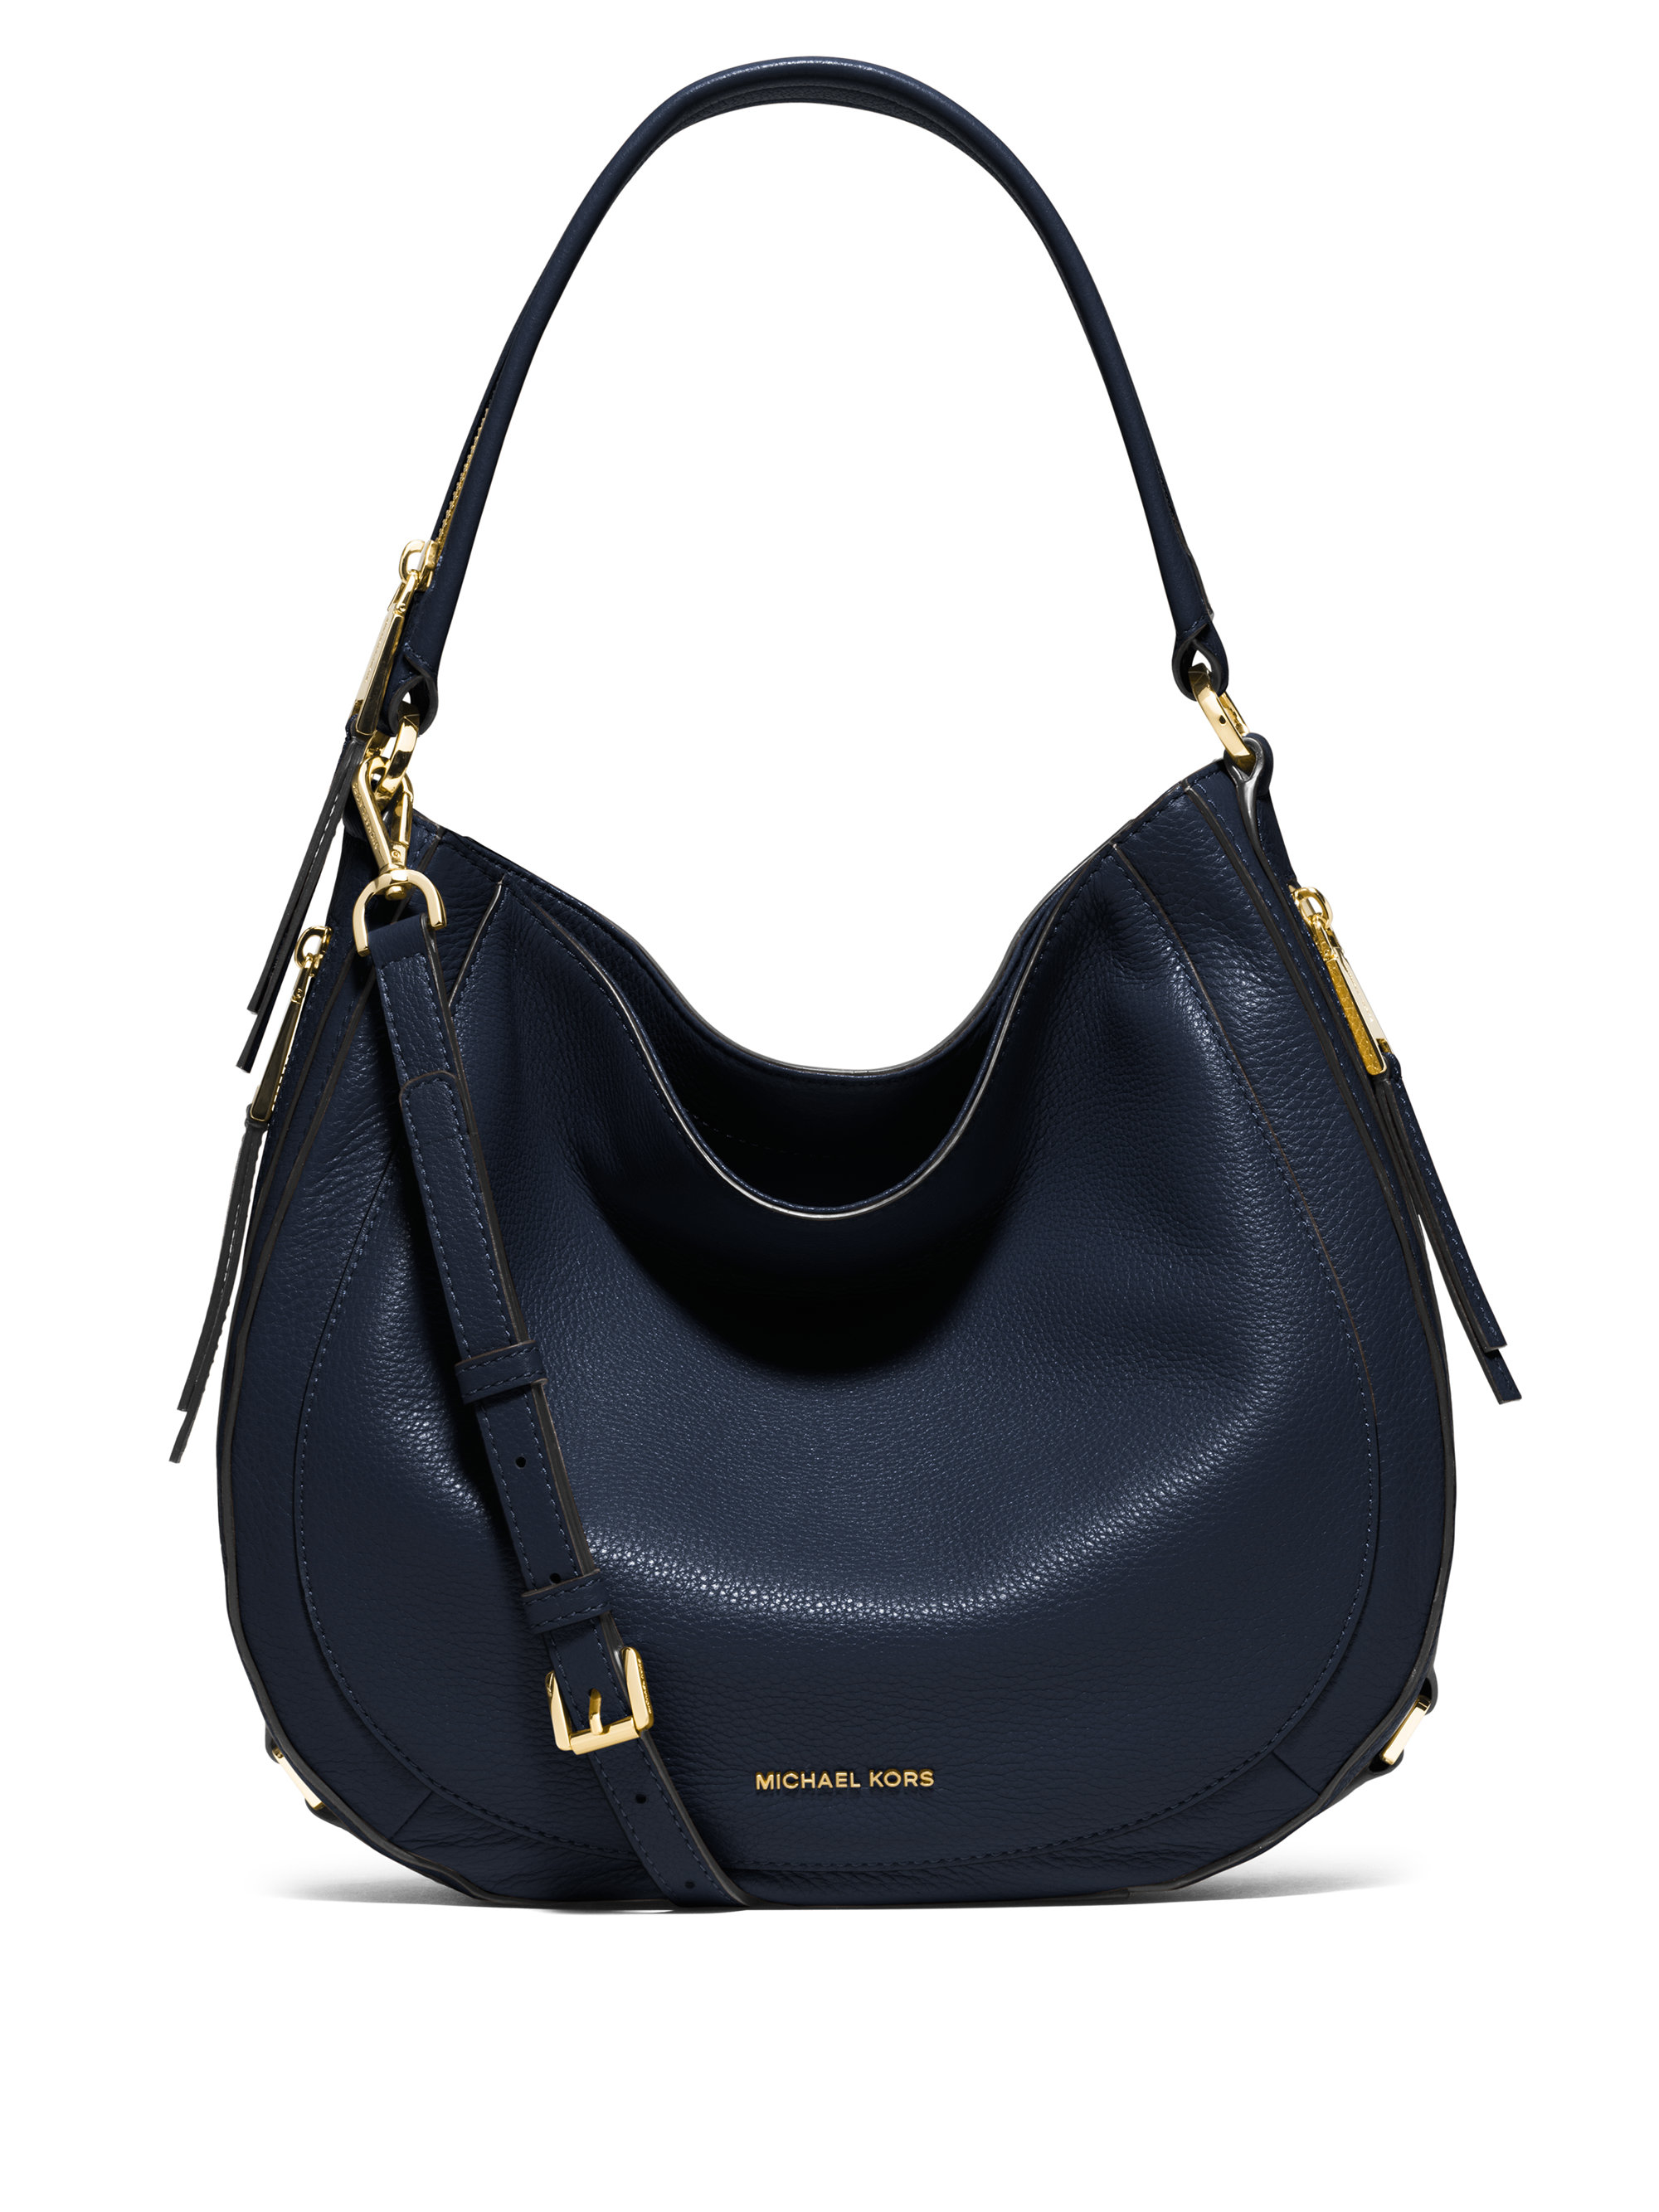 Michael Kors Julia Medium Leather Shoulder Bag in Navy (Blue) -